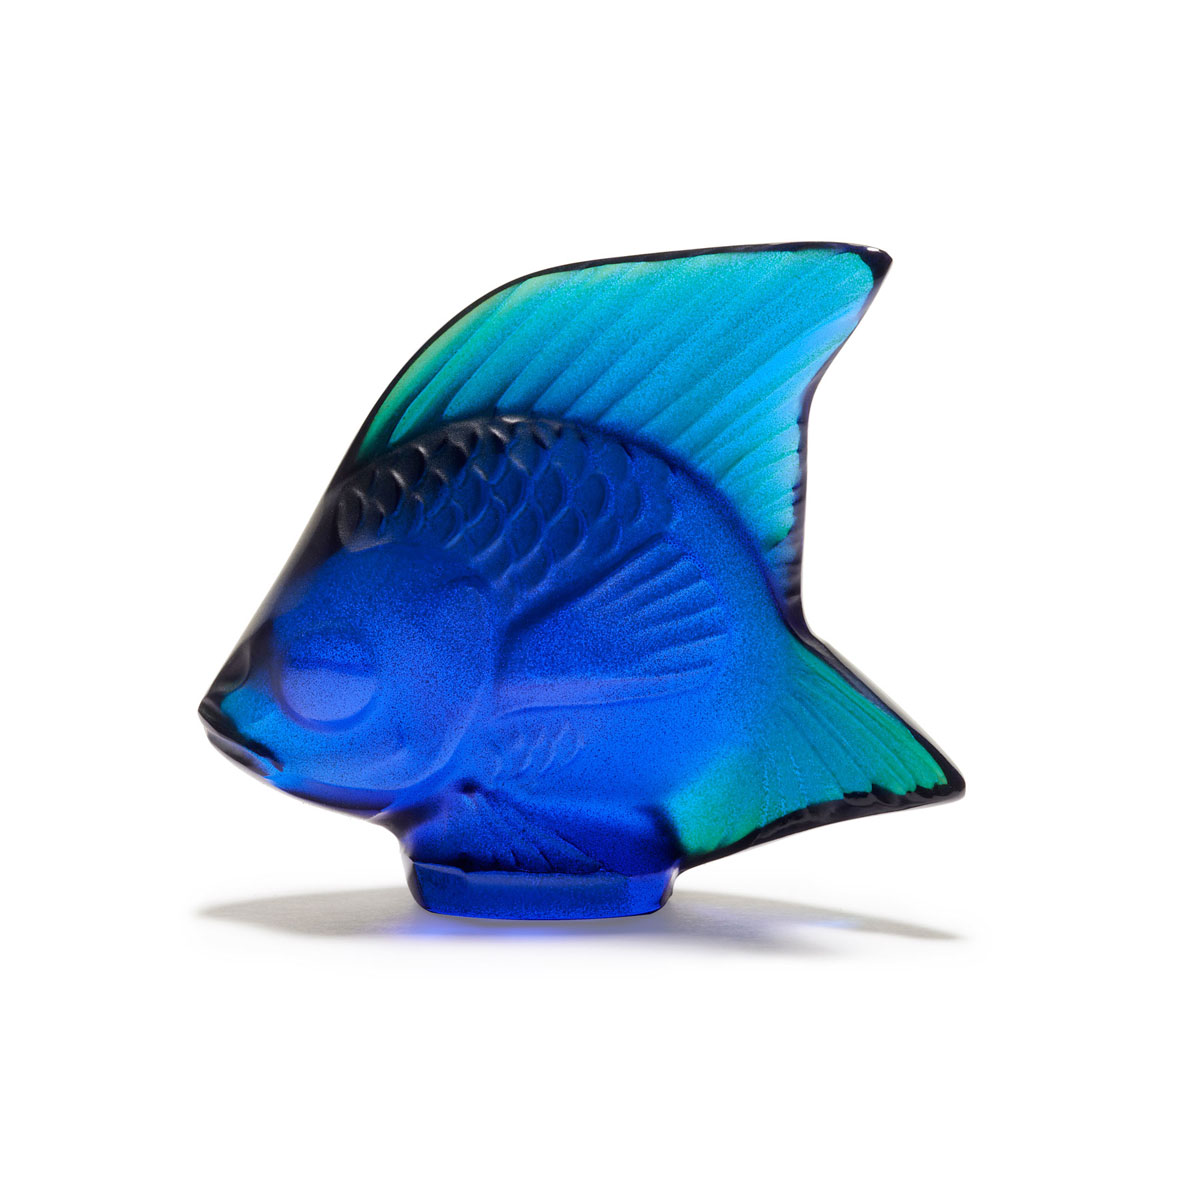 Lalique Cap Ferrat Blue Fish Sculpture